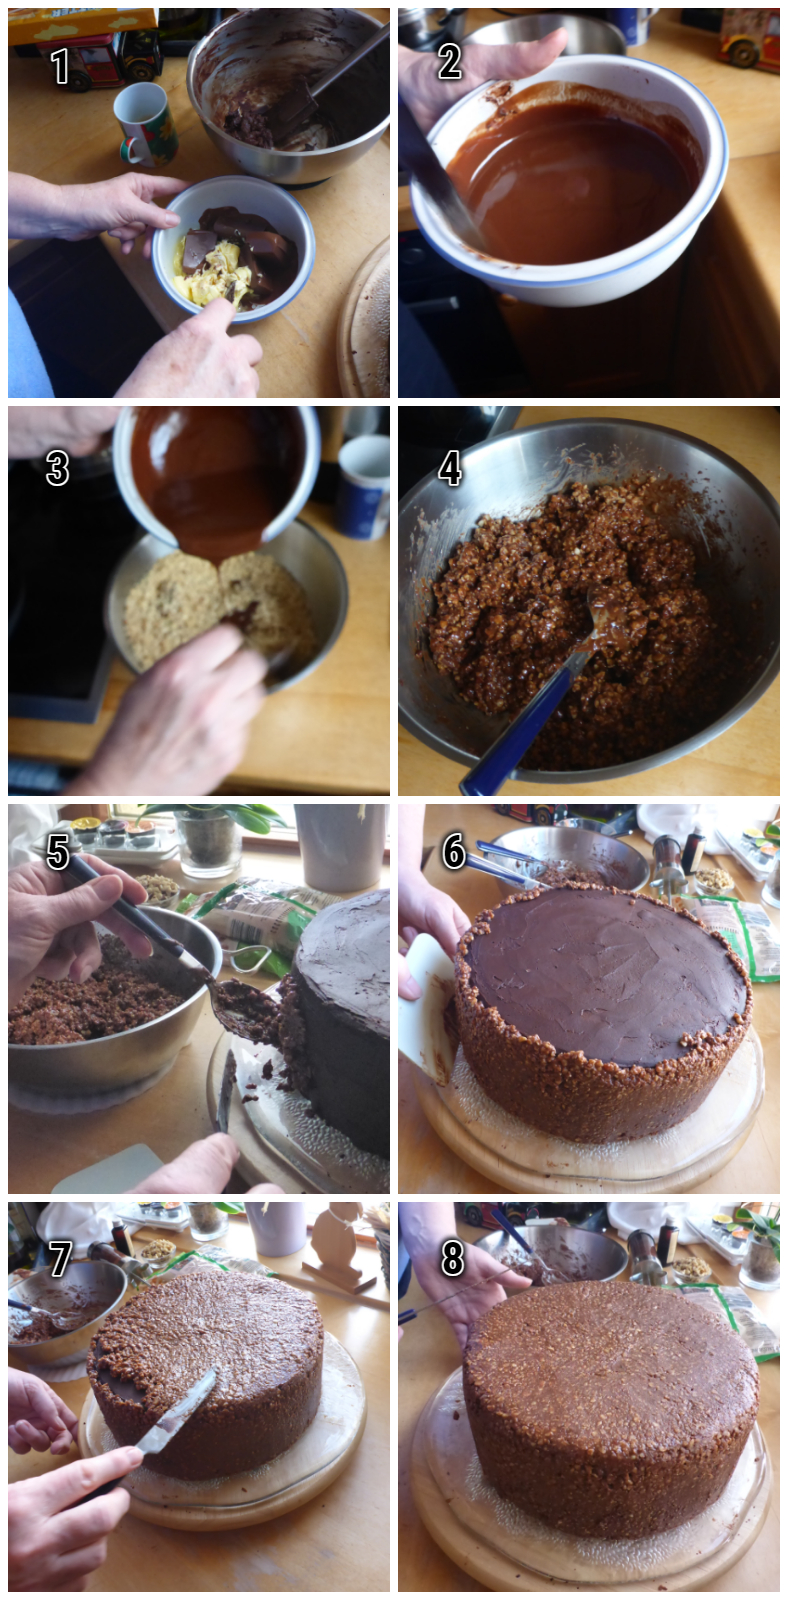 Die Verzierung von Schoko Nuss Torte: Ein faszinierender Prozess entfaltet sich in dieser Reihe von Bildern. Zuerst die Kreation einer verlockenden Schoko-Nusscreme, gefolgt von kunstvoller Verzierung einer Torte, bei der geschmolzene Schokolade in ästhetischen Mustern fließt. 